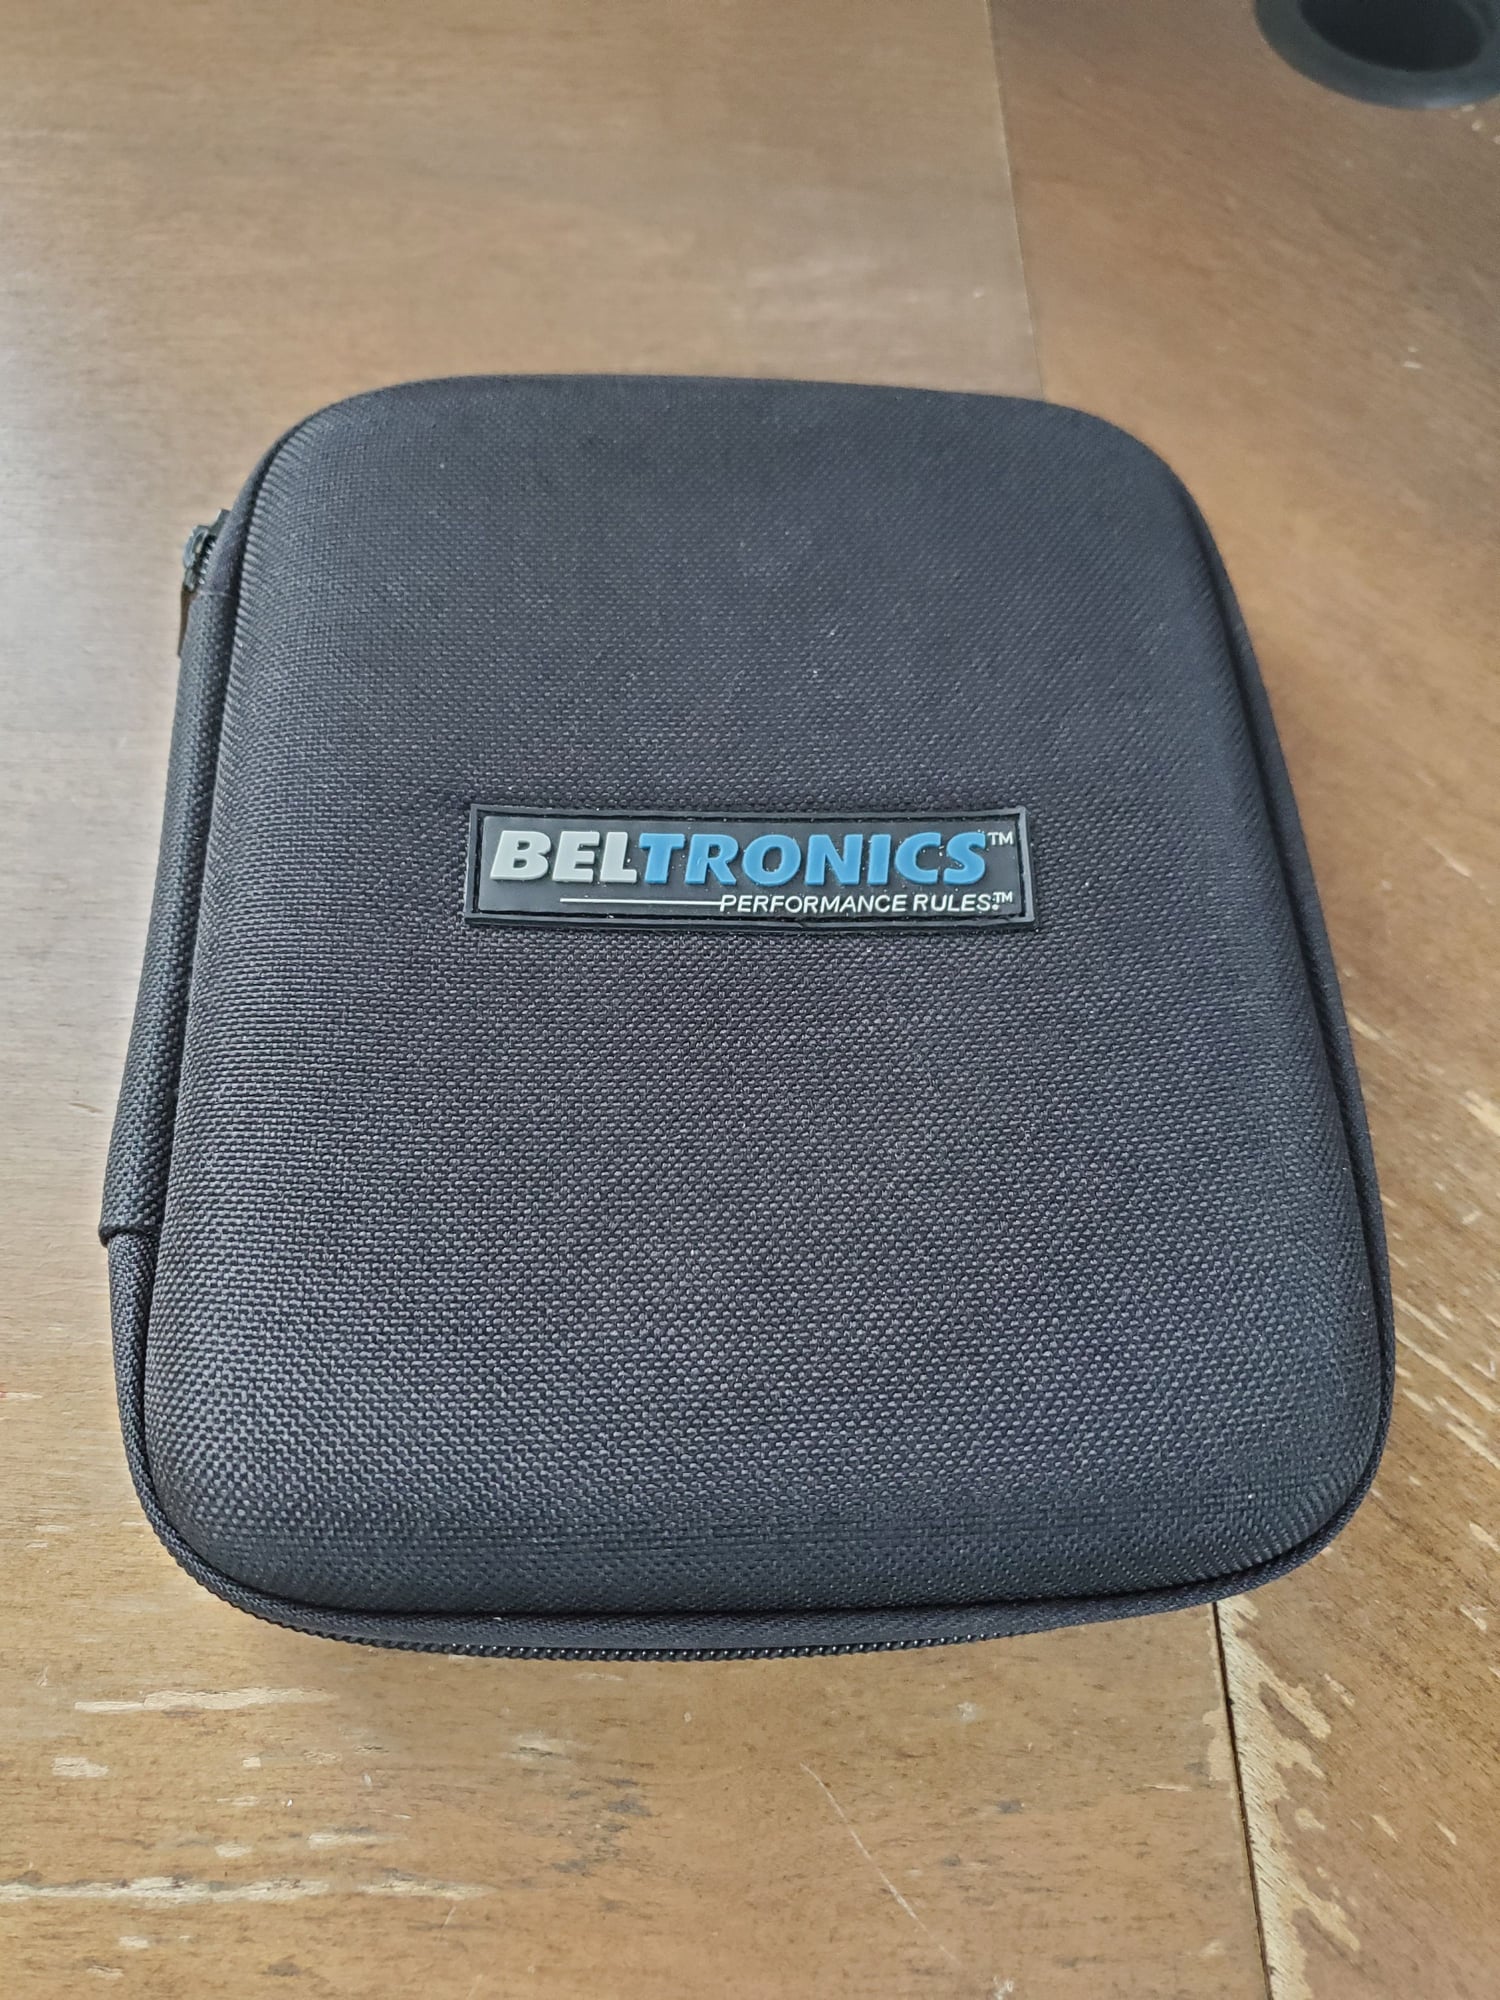 beltronics rx65 update software